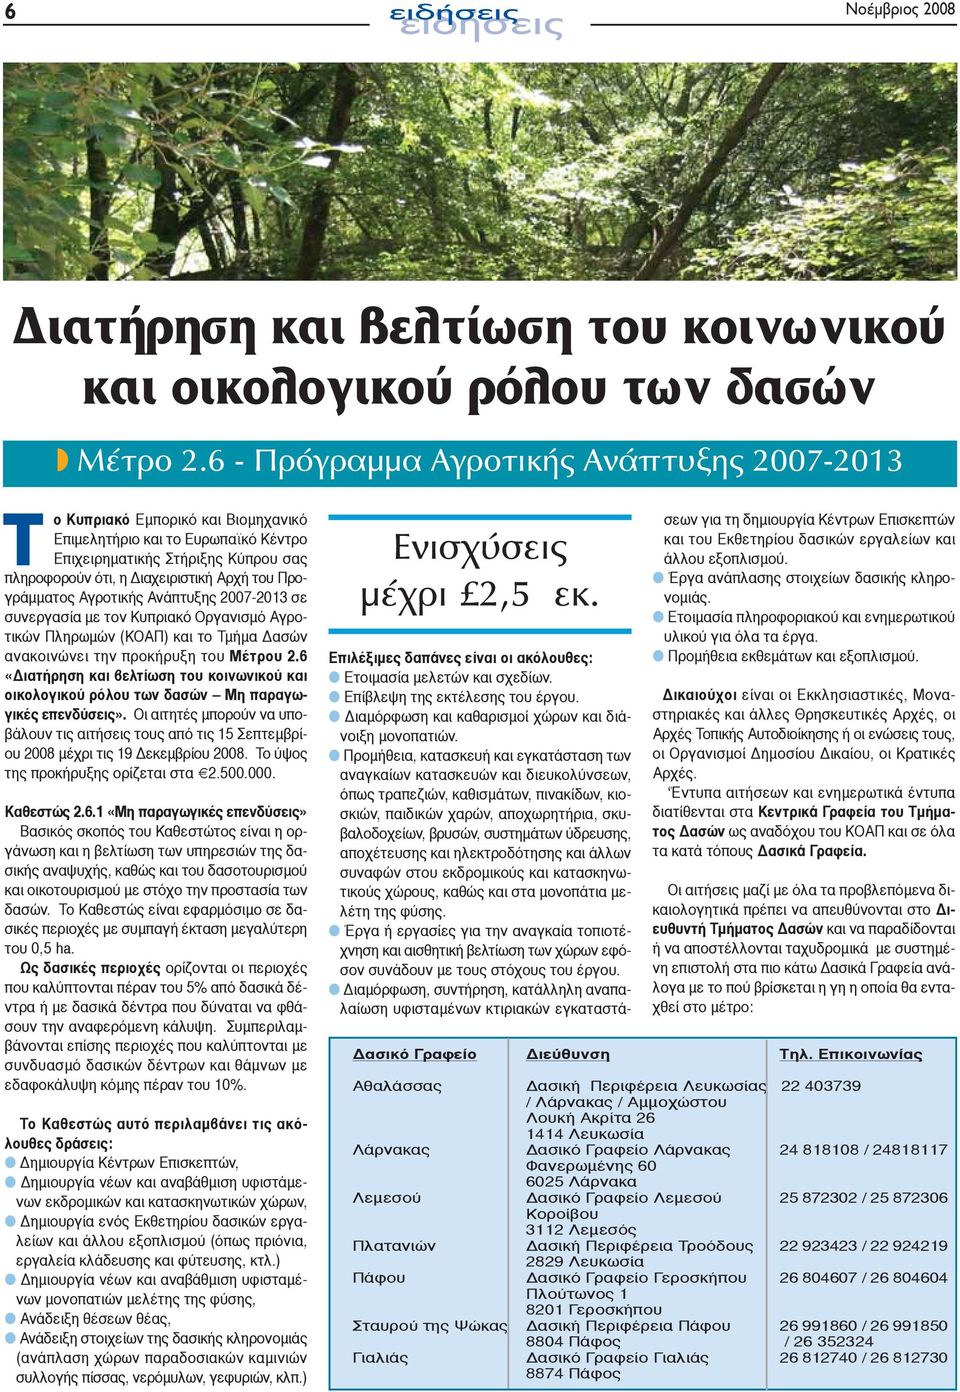 Προγράμματος Αγροτικής Ανάπτυξης 2007-2013 σε συνεργασία με τον Κυπριακό Οργανισμό Αγροτικών Πληρωμών (ΚΟΑΠ) και το Τμήμα Δασών ανακοινώνει την προκήρυξη του Μέτρου 2.